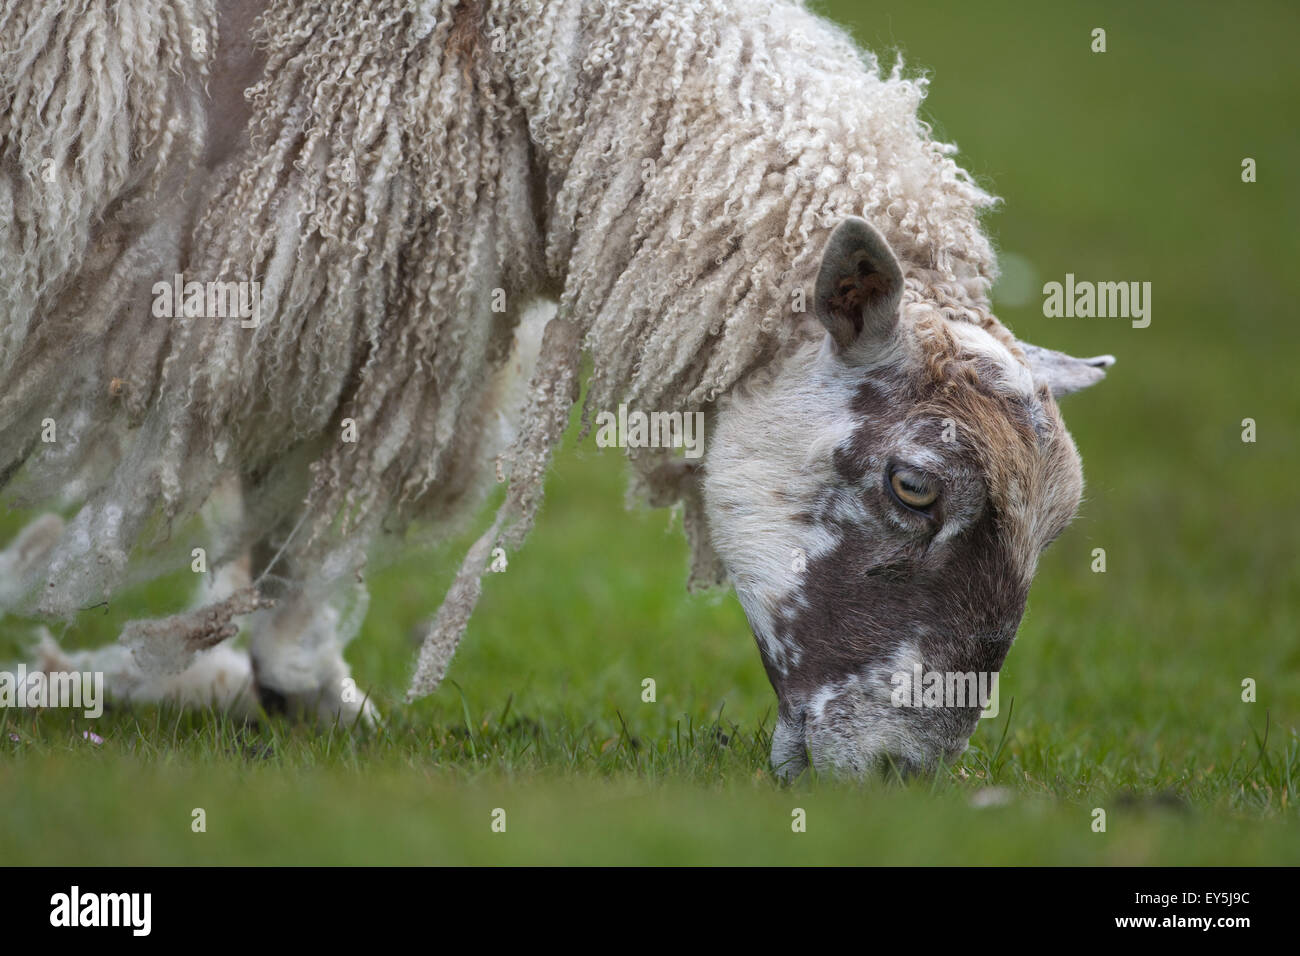 Ovejas. Pastoreo; Mula oveja pastando. Derramando la lana natural. Si no esquilados, lana es muda. De mayo. Iona. Escocia. Foto de stock